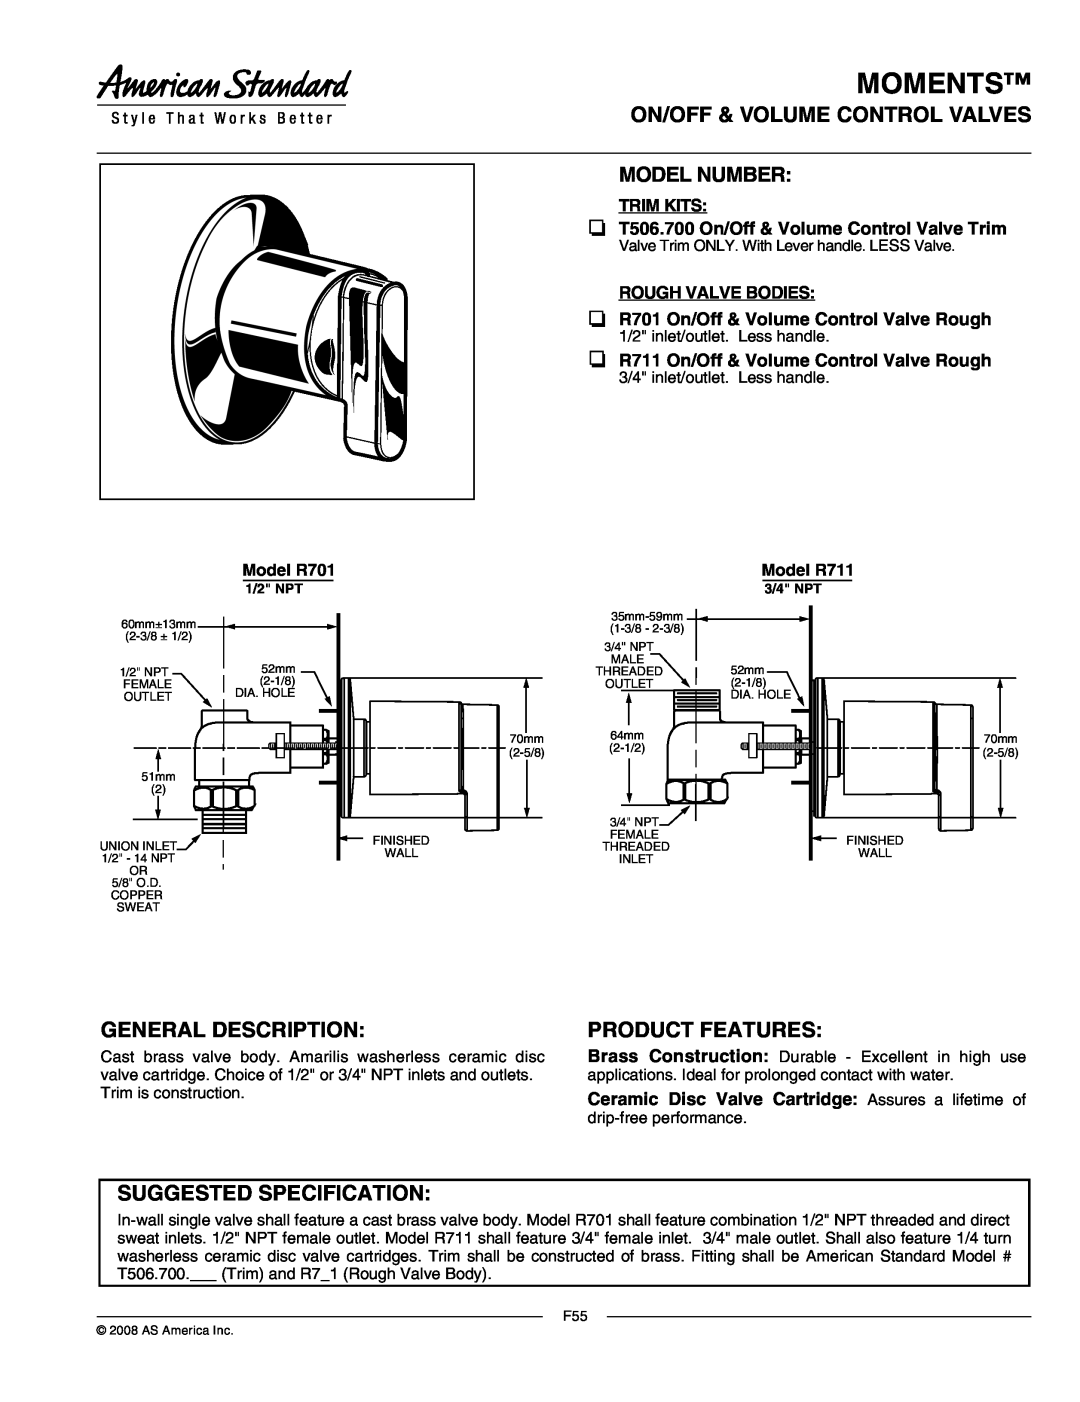 American Standard T506.700 manual Moments, On/Off & Volume Control Valves Model Number, General Description, Model R711 